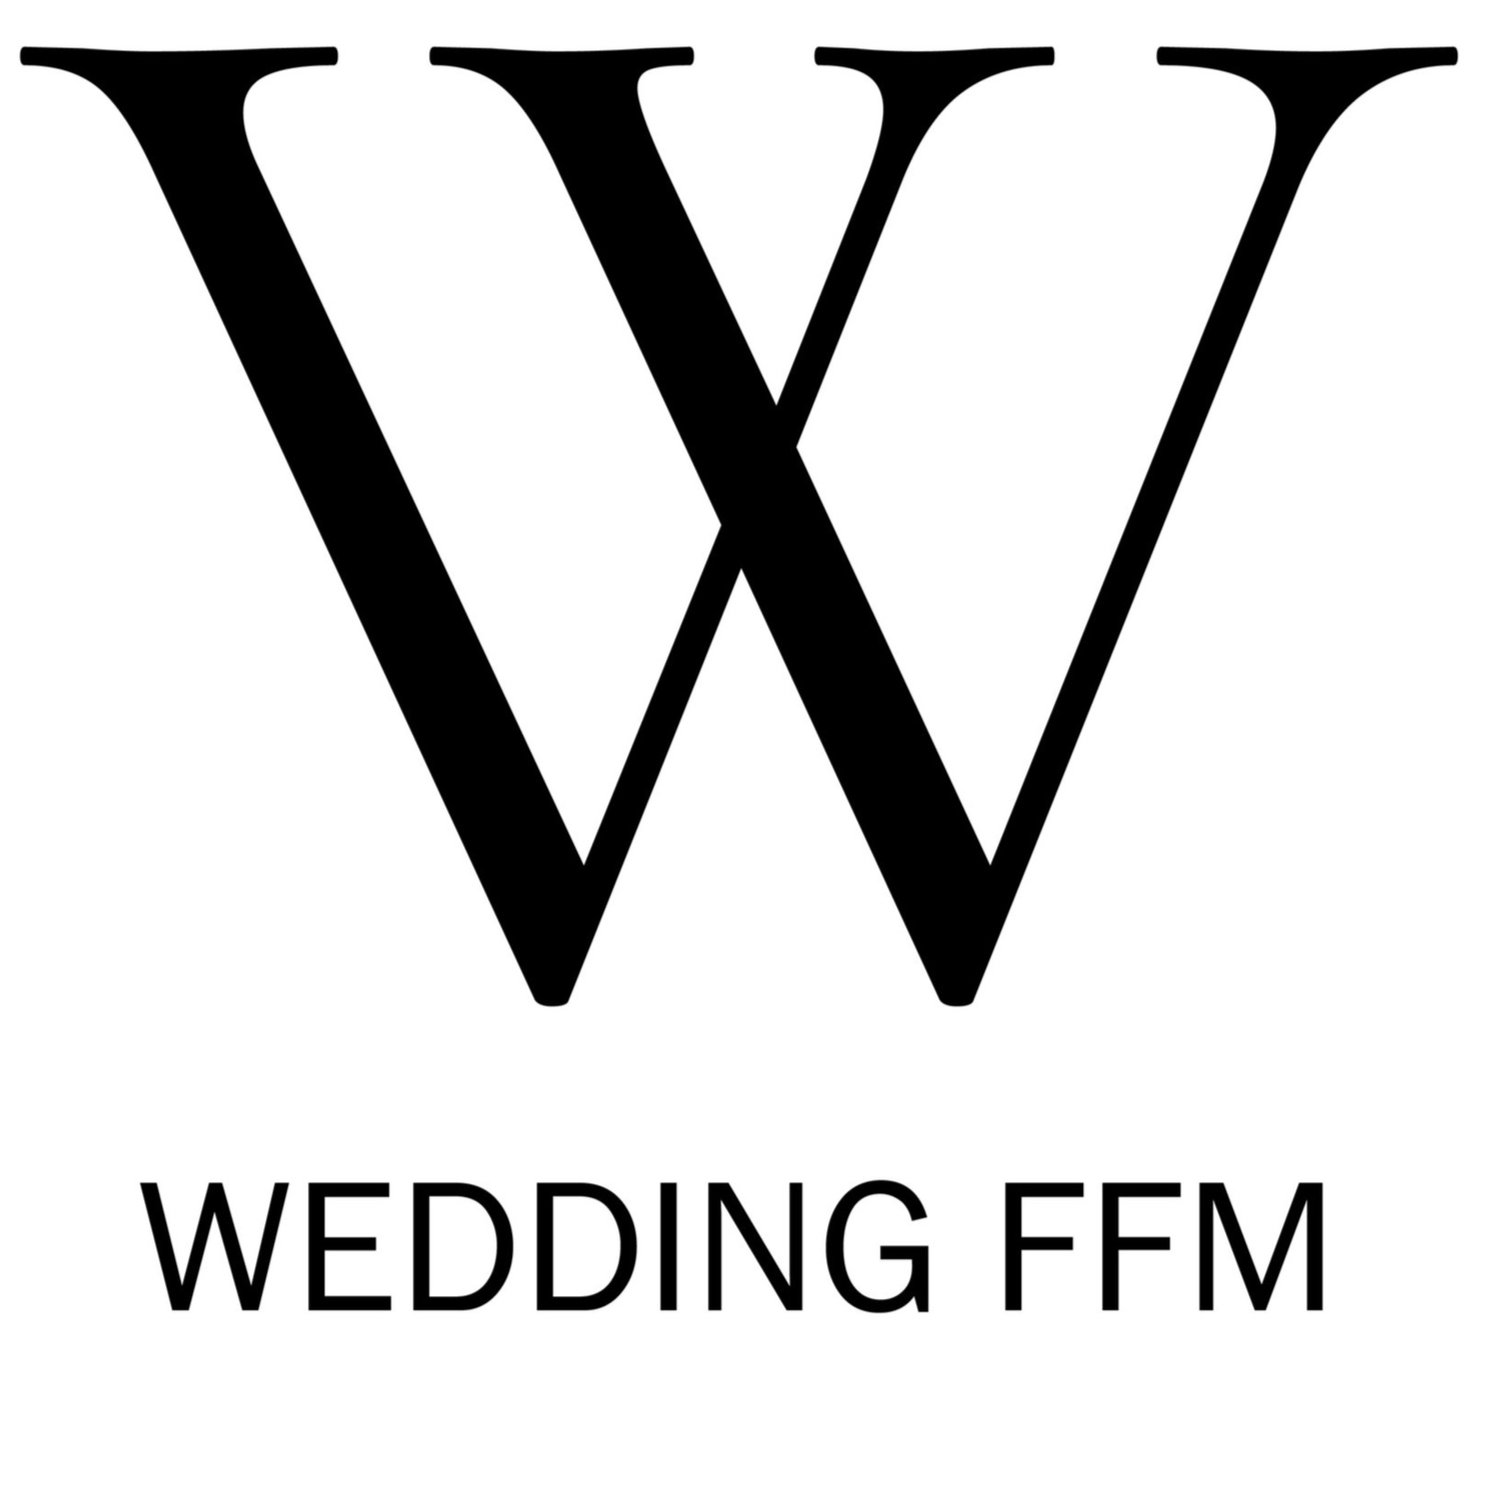 WEDDING FFM